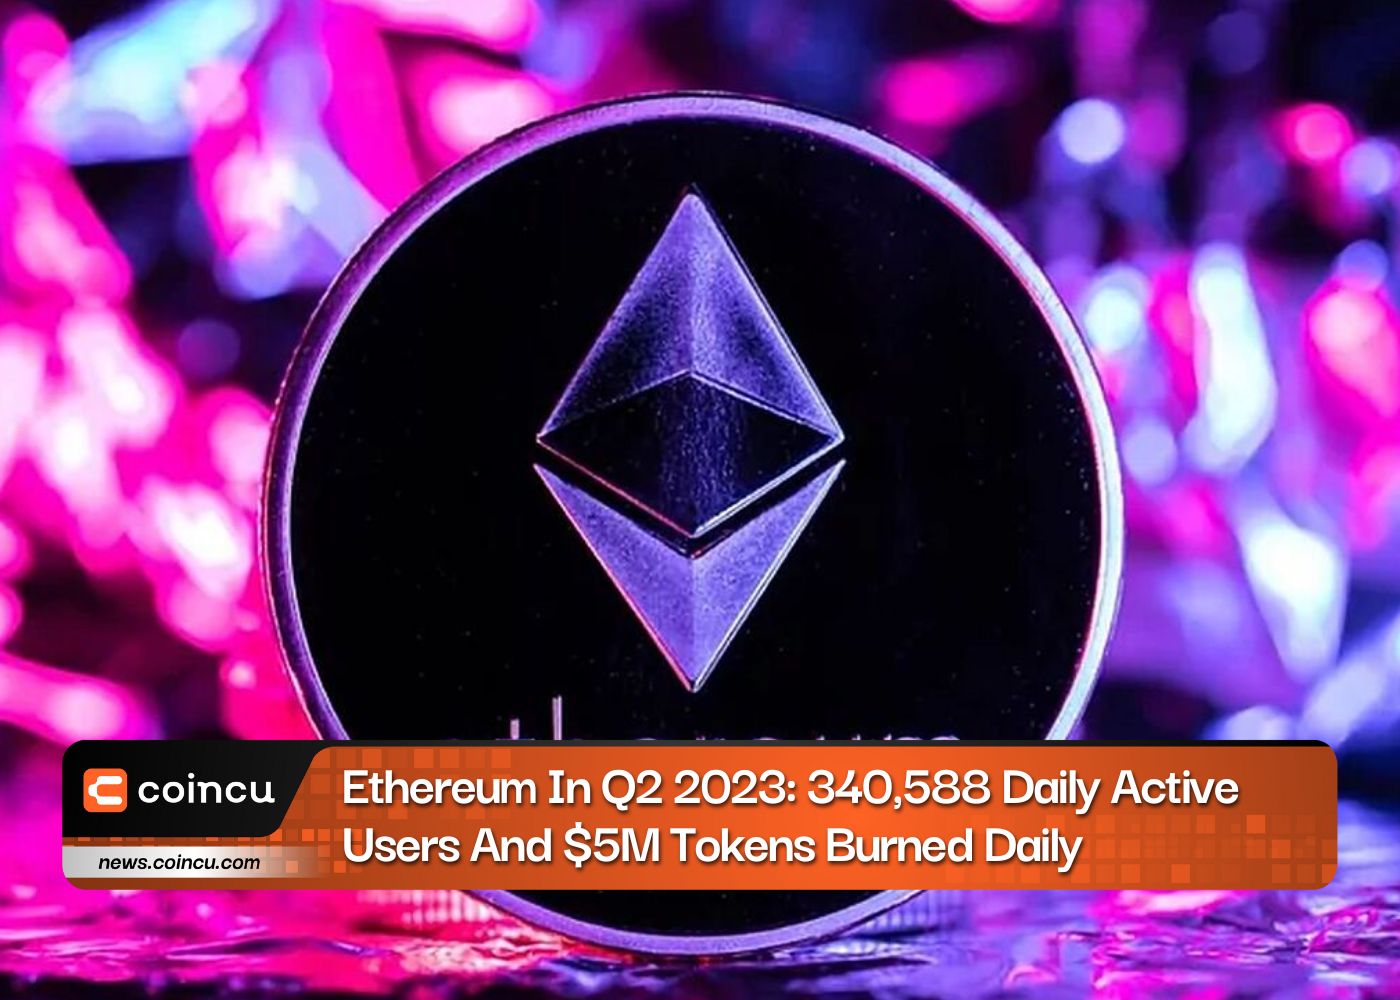 Ethereum im zweiten Quartal 2: 2023 täglich aktive Benutzer und täglich verbrannte Token im Wert von 340,588 Millionen US-Dollar